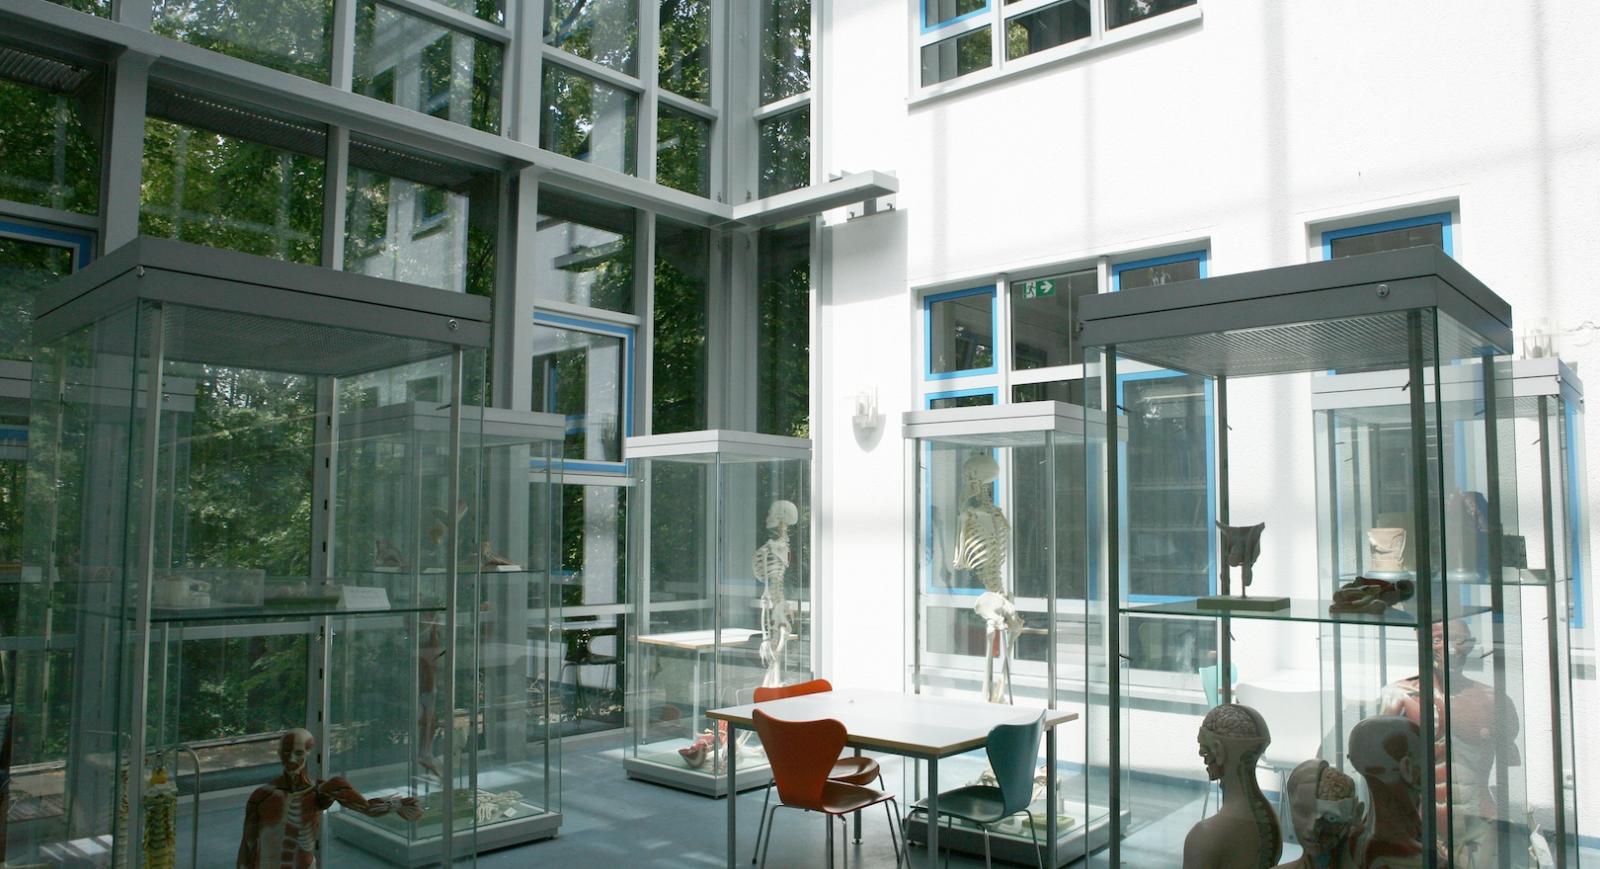 Zentralbibliothek der Sportwissenschaften der Deutschen Sporthochschule Köln